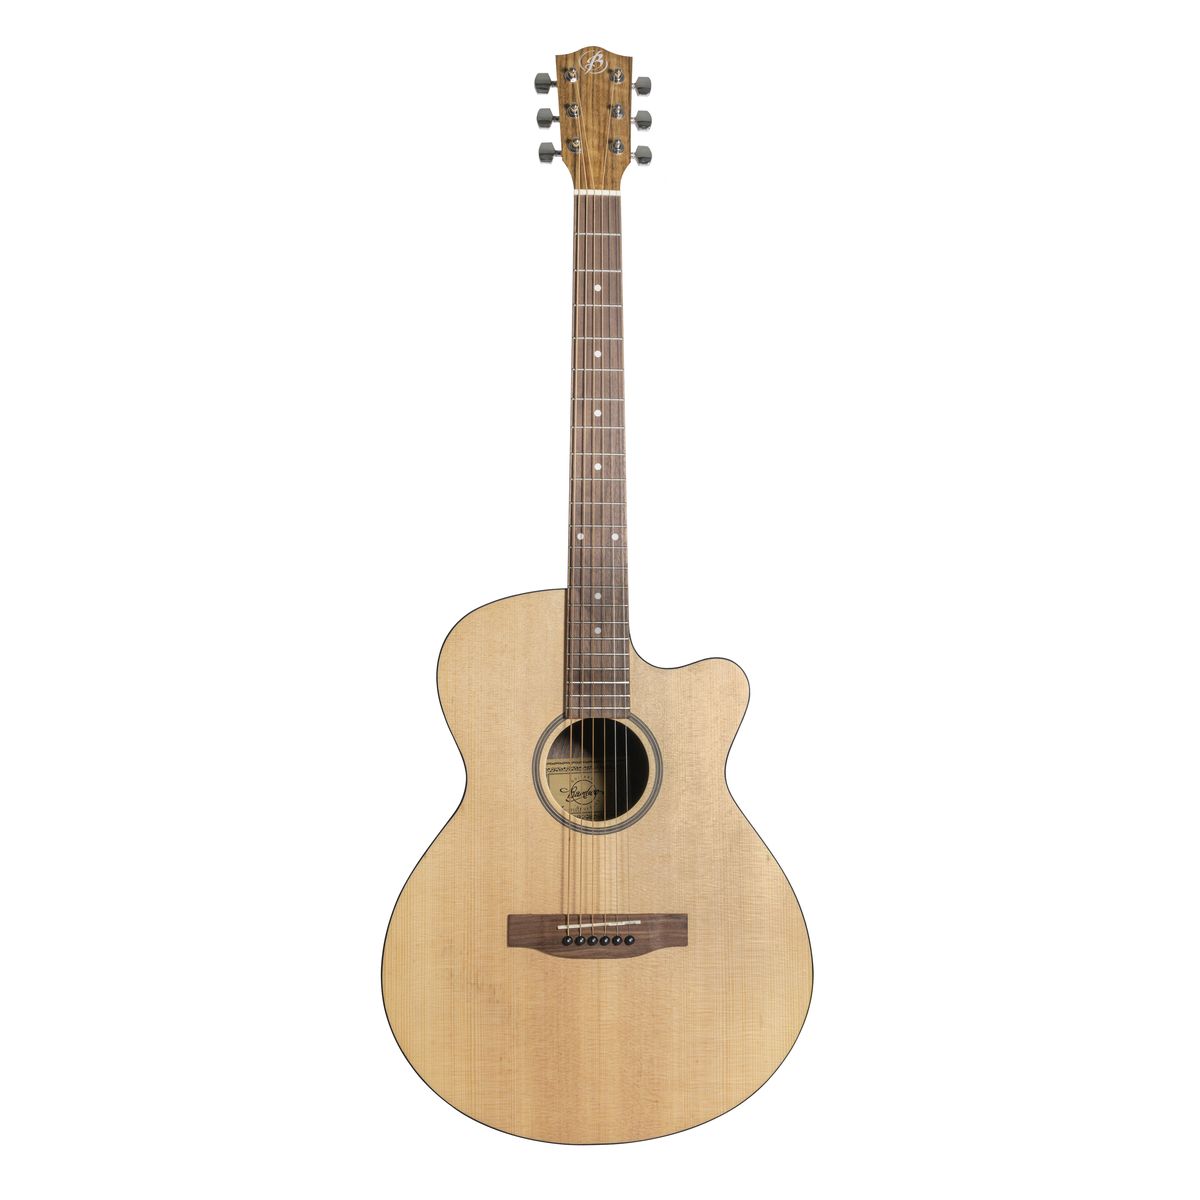 Акустические гитары Bamboo GA-40 Spruce грелка на чайник этель spruce branches 28х28см 100%хл саржа 190 г м2